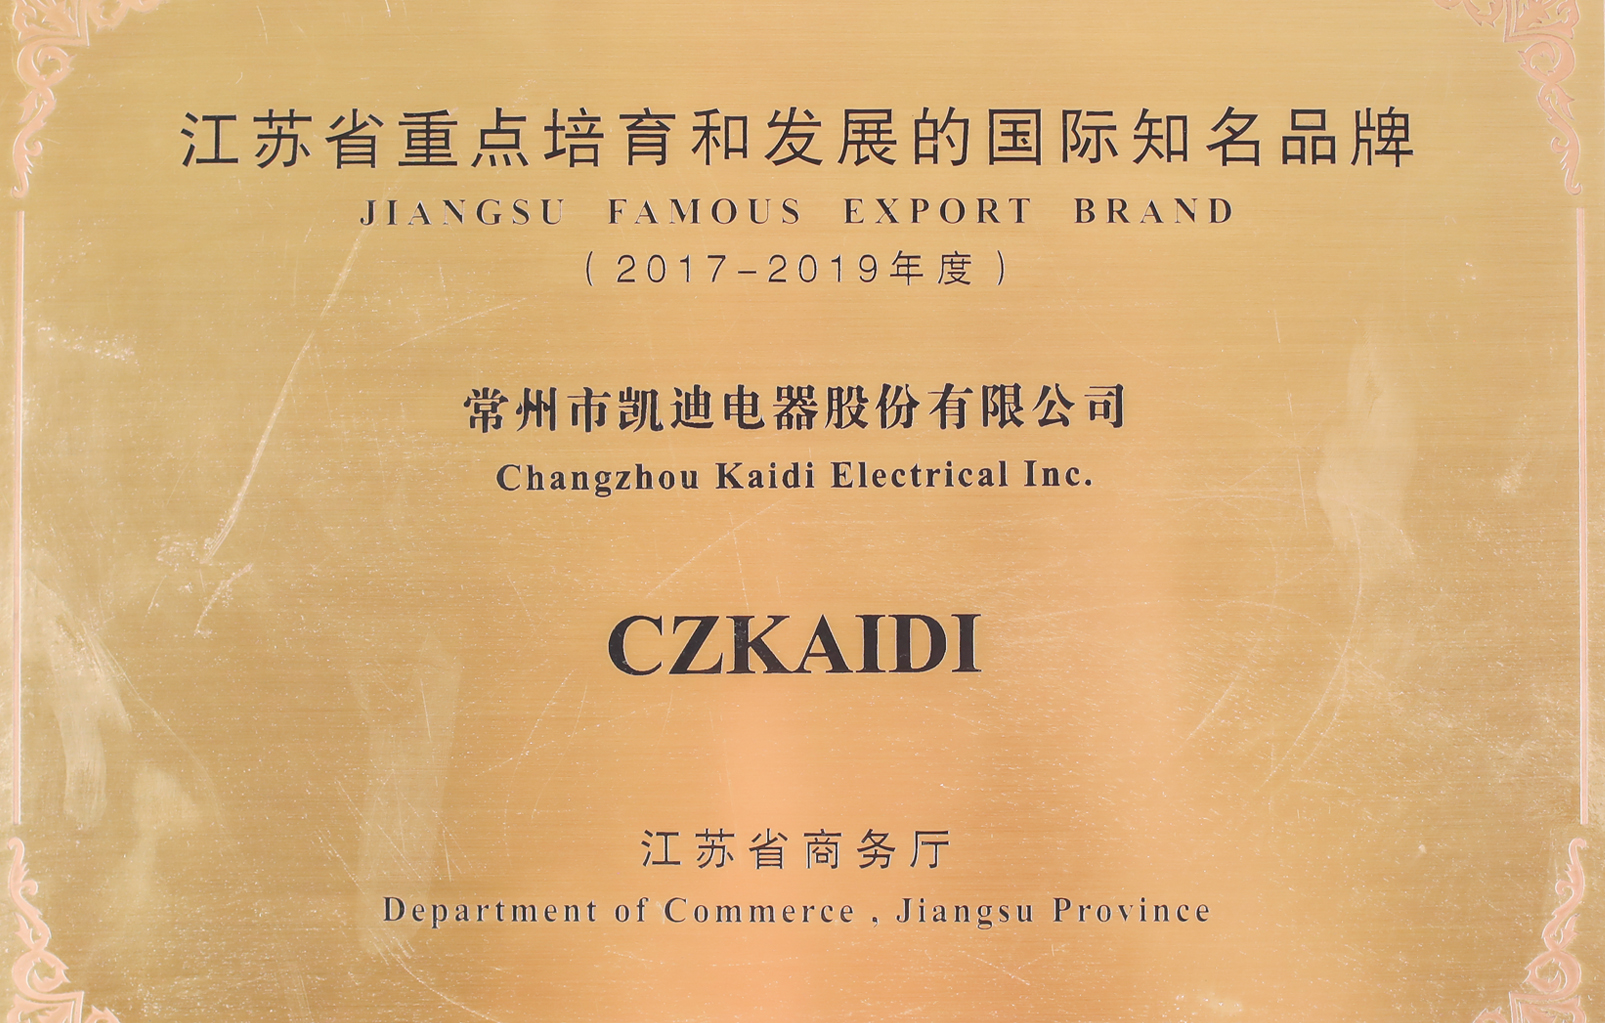 江苏省重 点培育和发展的国际知名品牌